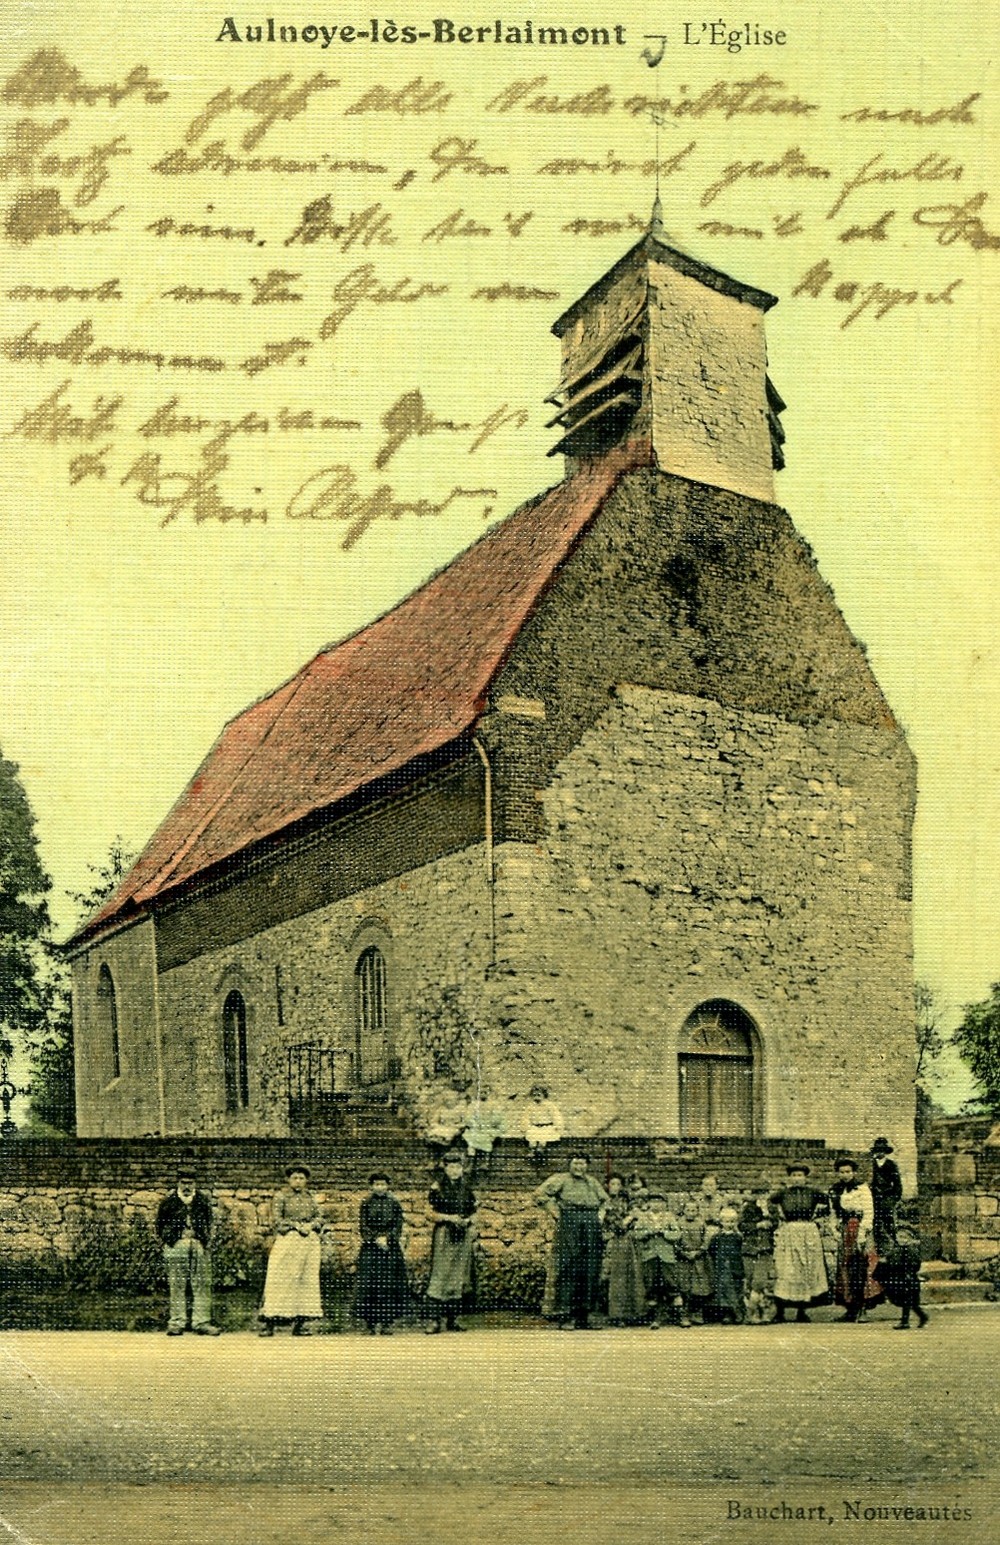 L'ancienne église d'Aulnoye lès Berlaimont